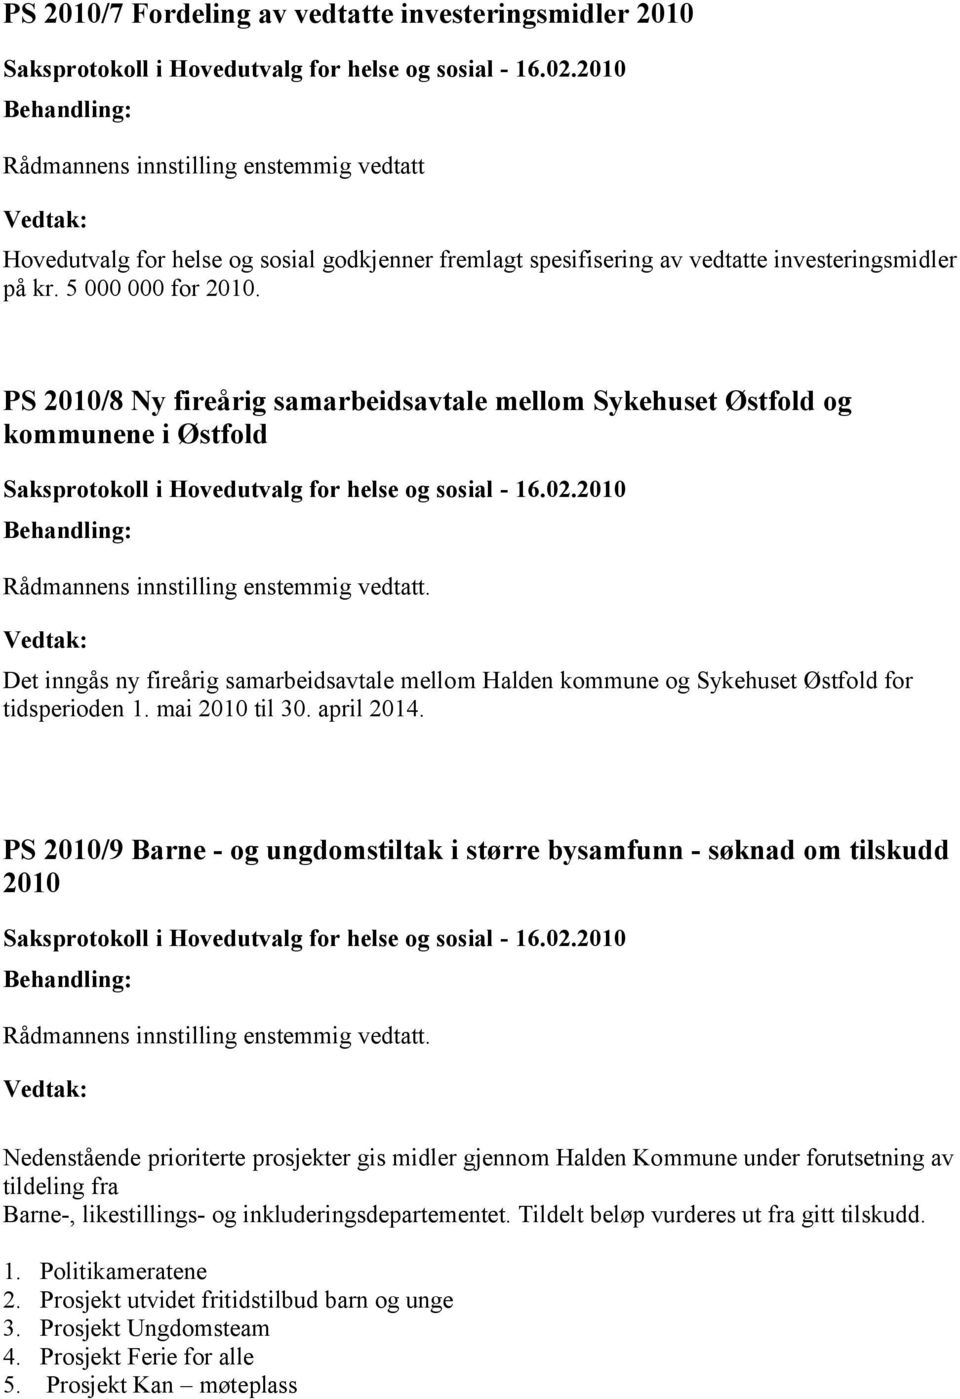 Det inngås ny fireårig samarbeidsavtale mellom Halden kommune og Sykehuset Østfold for tidsperioden 1. mai 2010 til 30. april 2014.